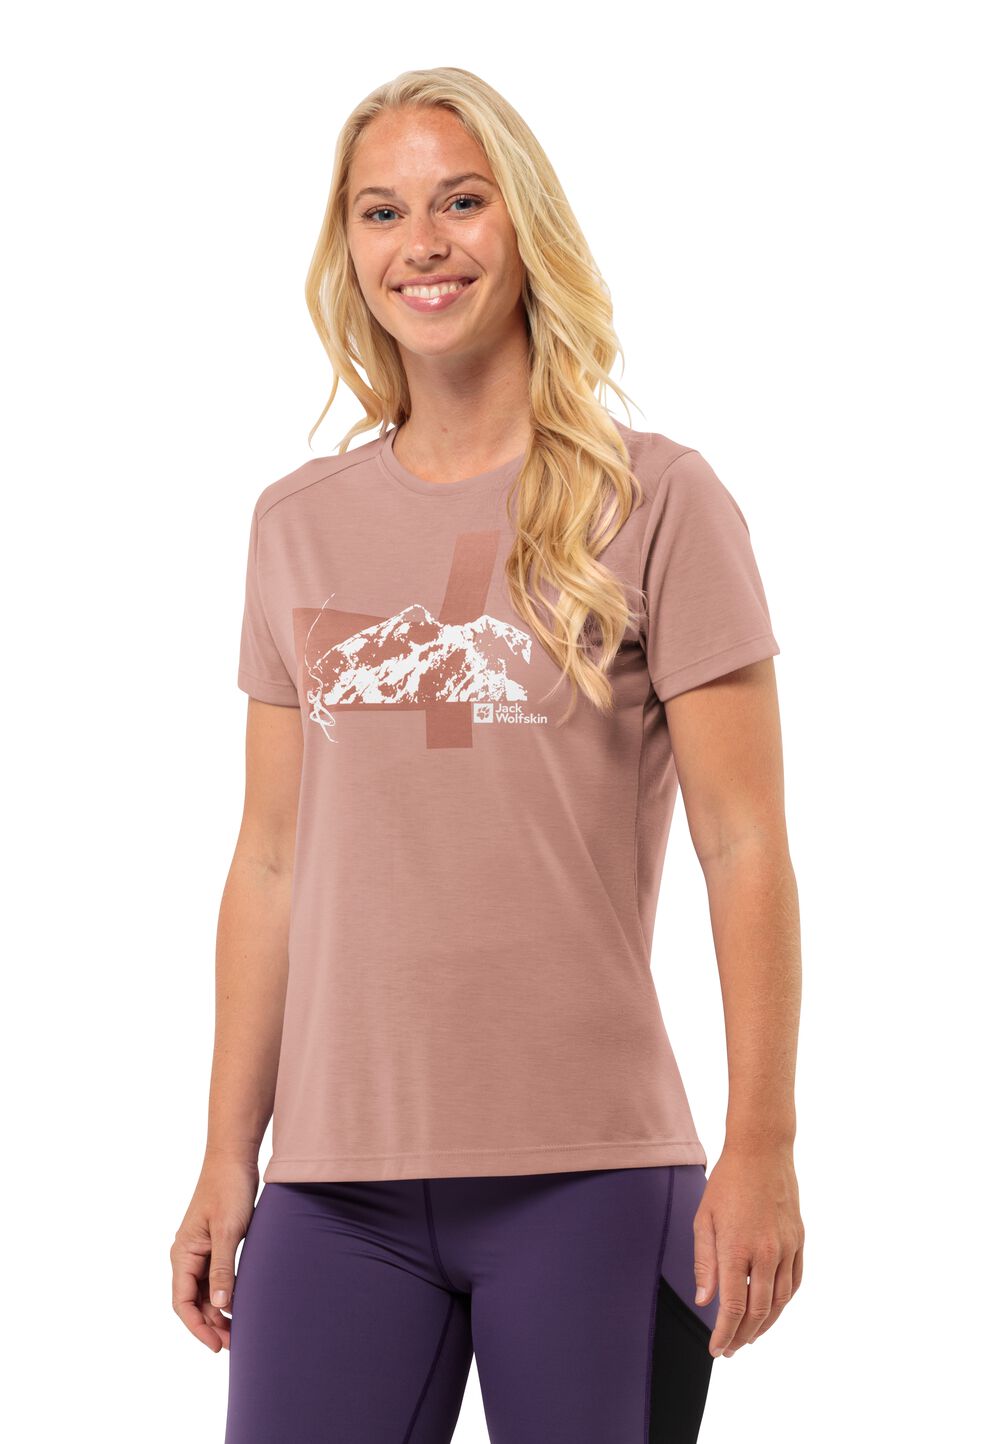 Jack Wolfskin Vonnan S S Graphic T-Shirt Women Functioneel shirt Dames XL bruin rose dawn